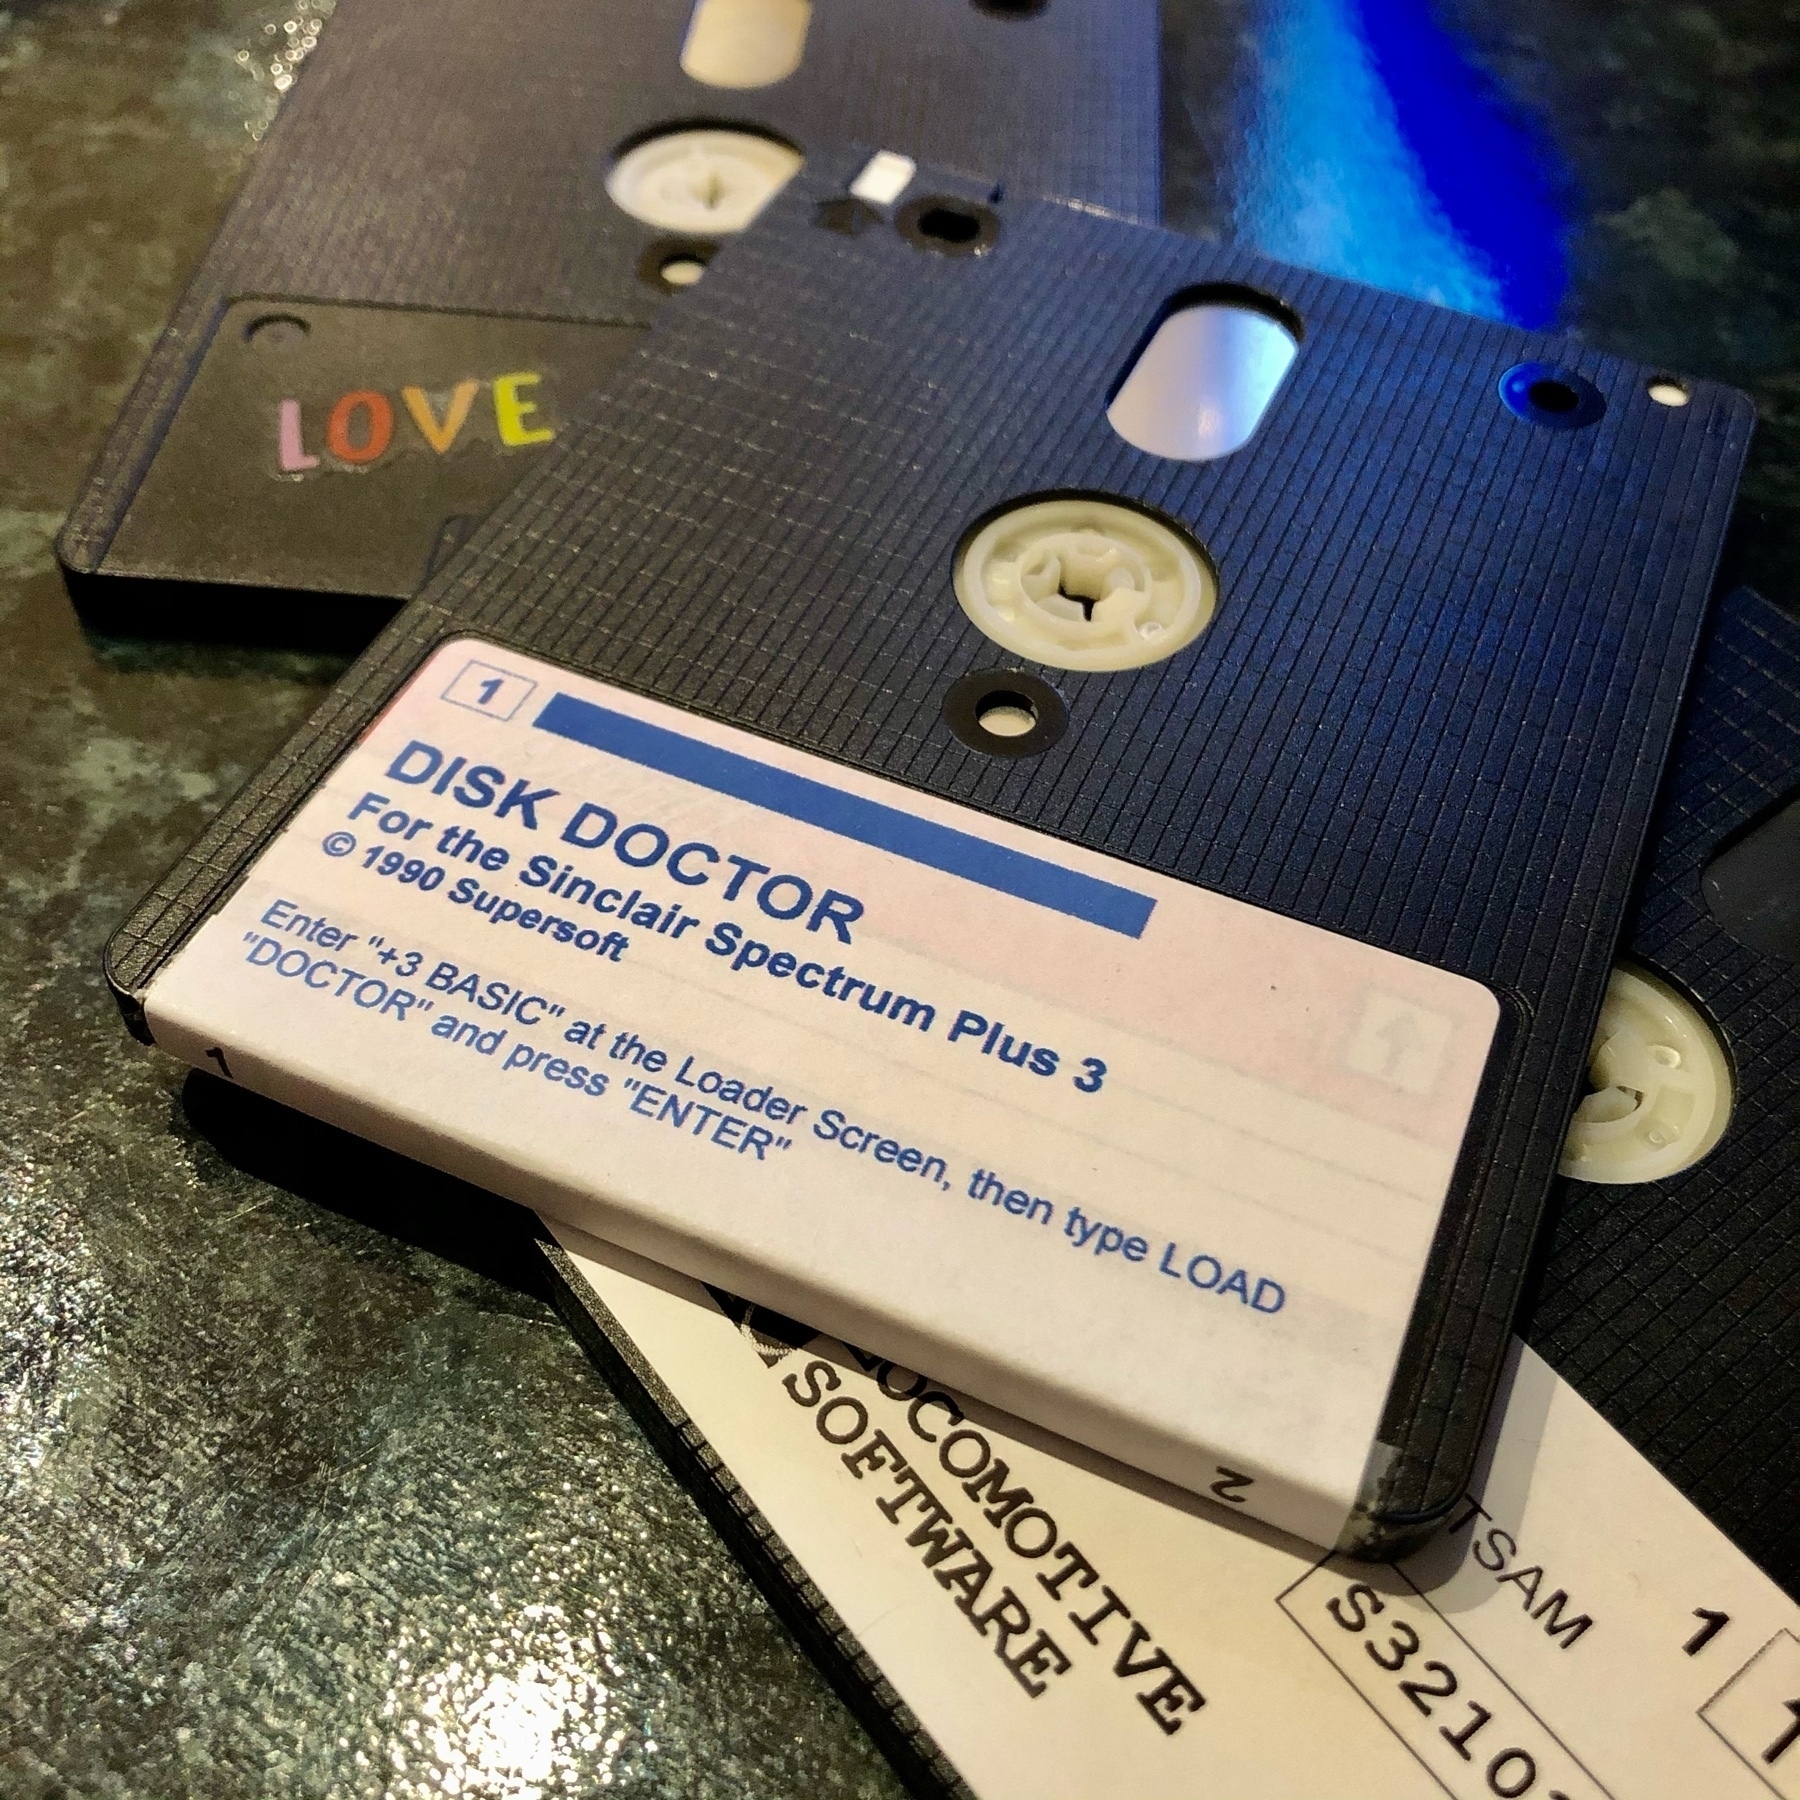 3" format floppy disk labelled “Disk Doctor”